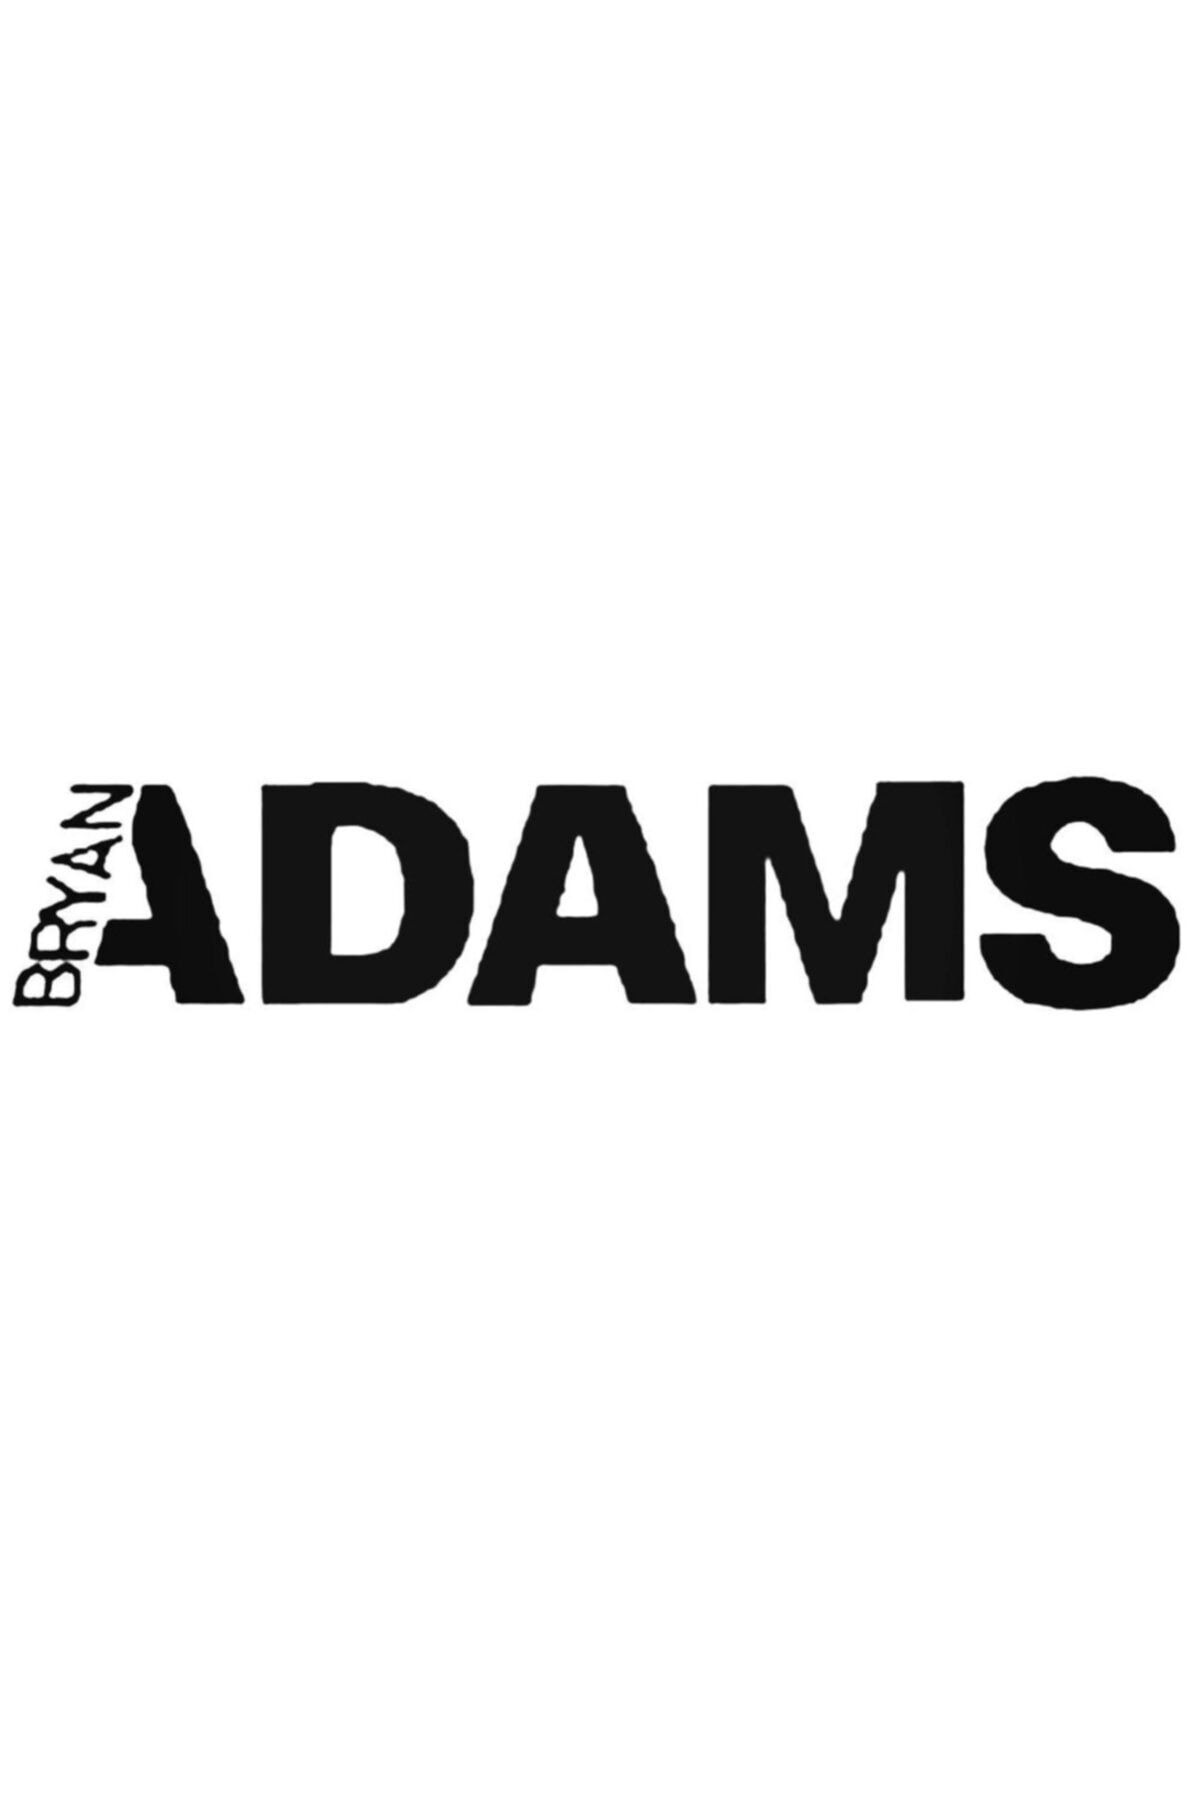 Genel Markalar Bryan Adams Sticker Araba Oto Arma Duvar Sticker Ev Dekoratif Çıkartma 20 cm